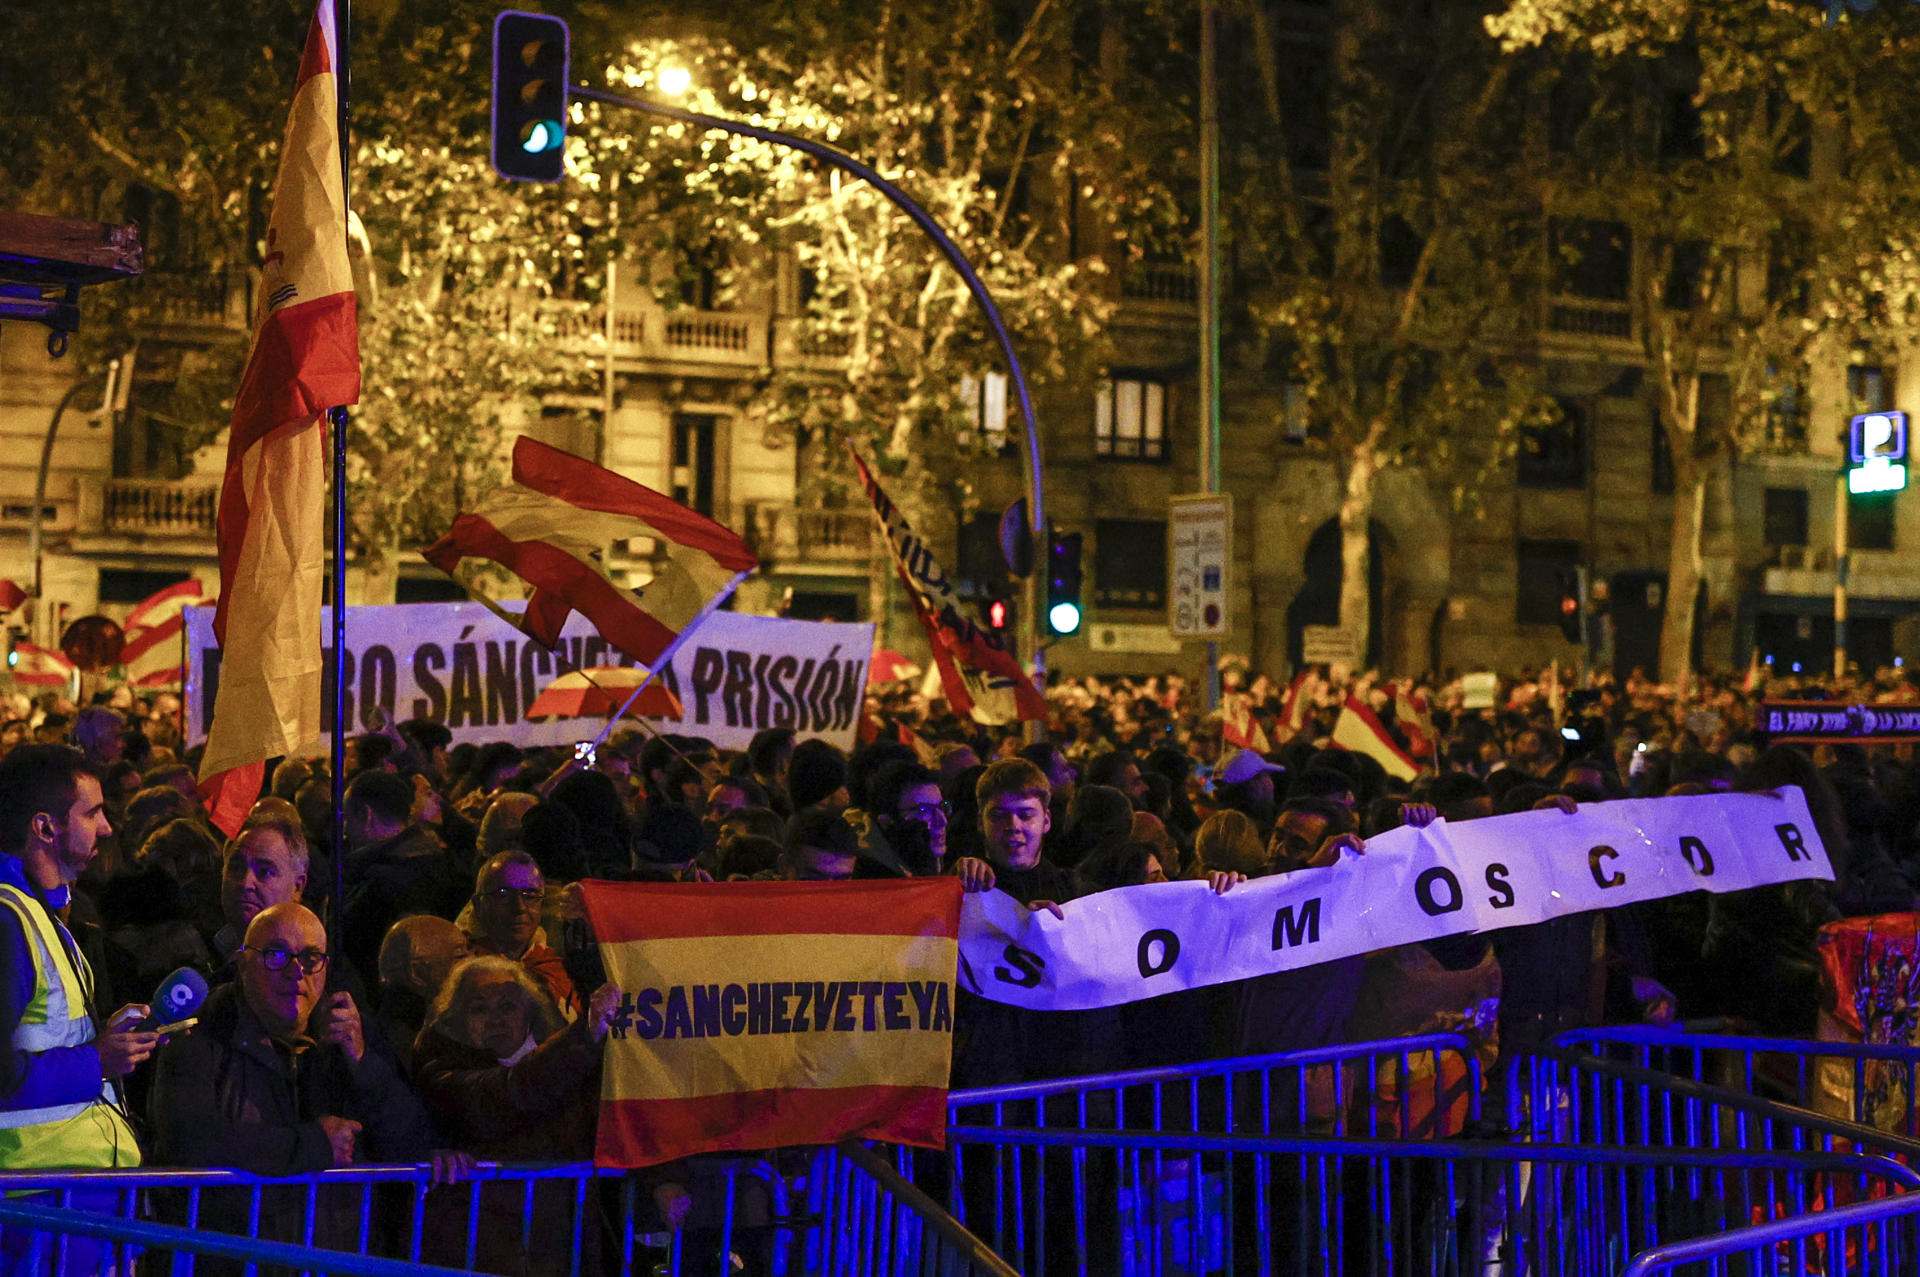 La manifestació contra l'amnistia a Ferraz, sense incidents, però amb insults a Sánchez i Puigdemont